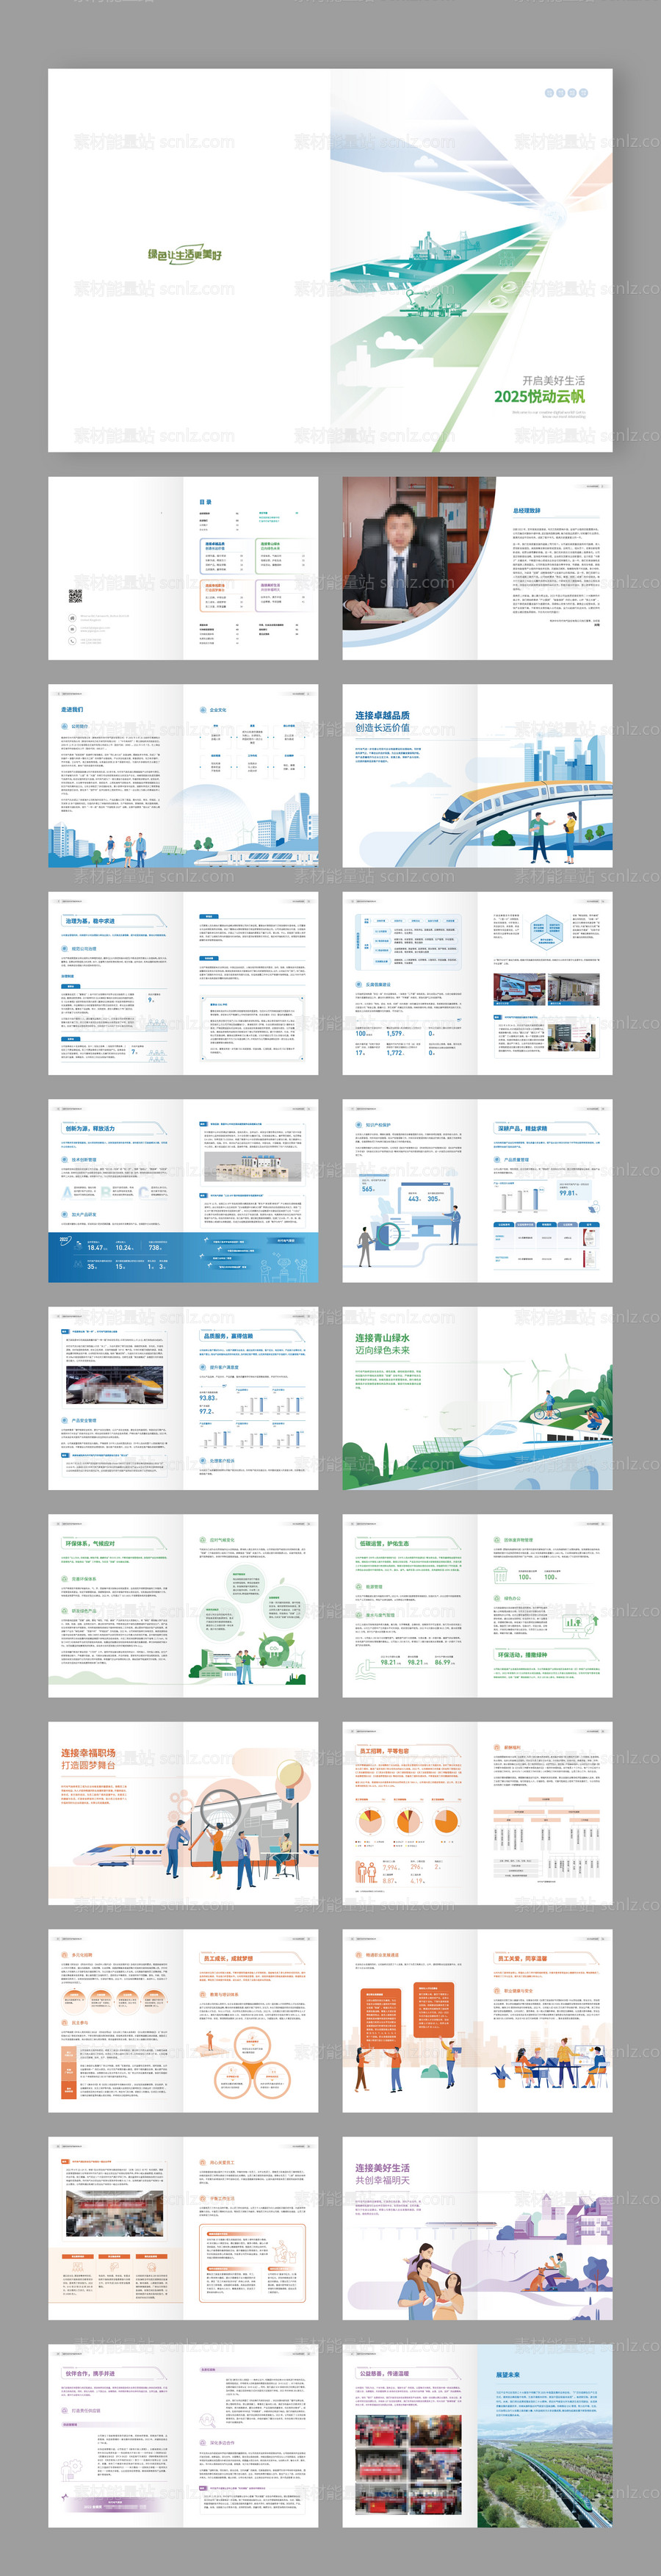 素材能量站-新能源高新技术宣传画册